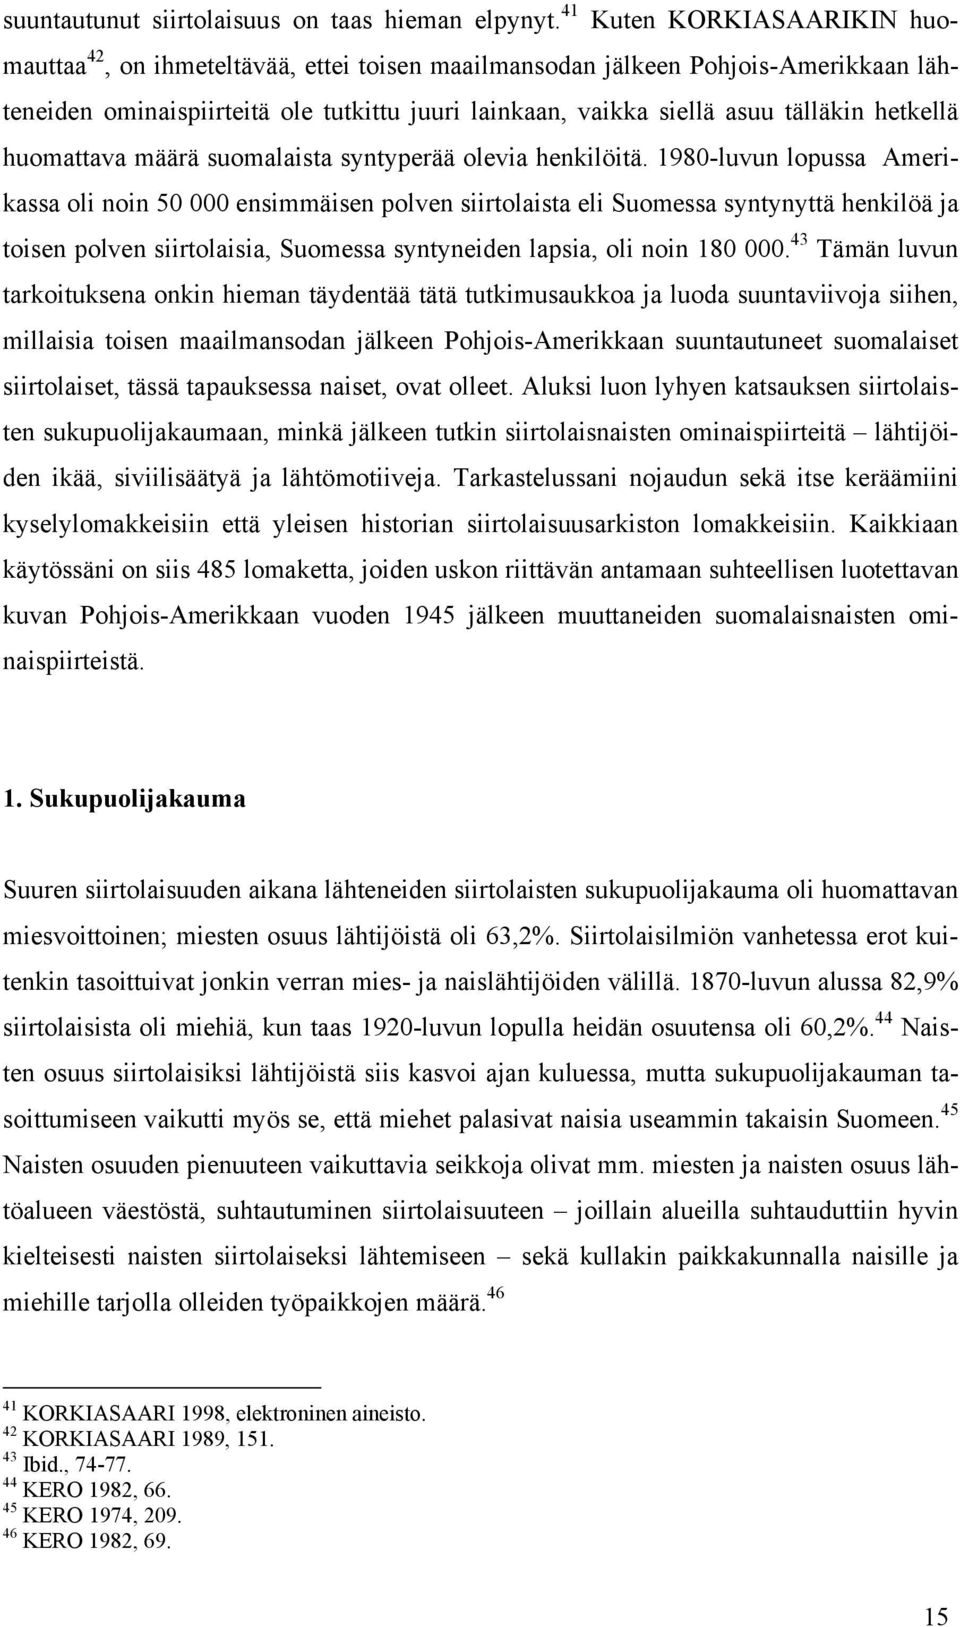 hetkellä huomattava määrä suomalaista syntyperää olevia henkilöitä.